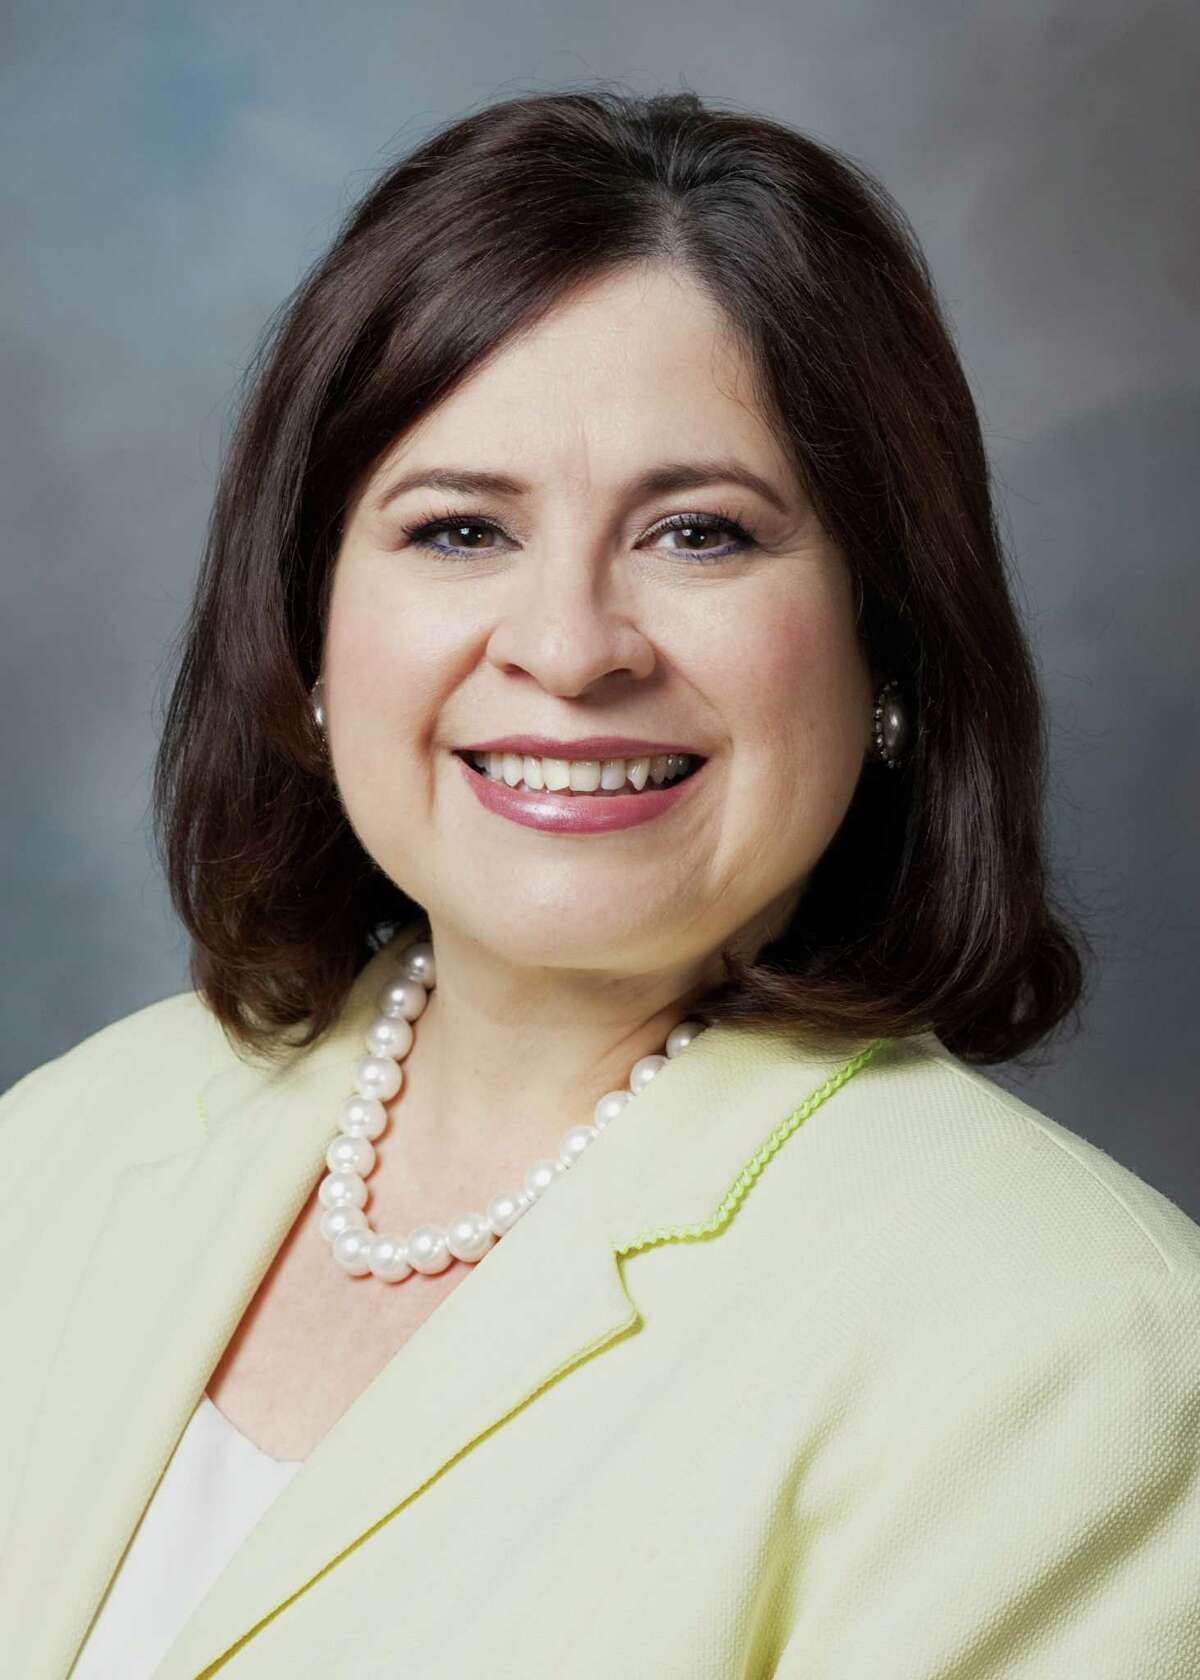 Sen. Leticia Van de Putte, a Democrat, represents District 26, which includes parts of San Antonio and Bexar County.